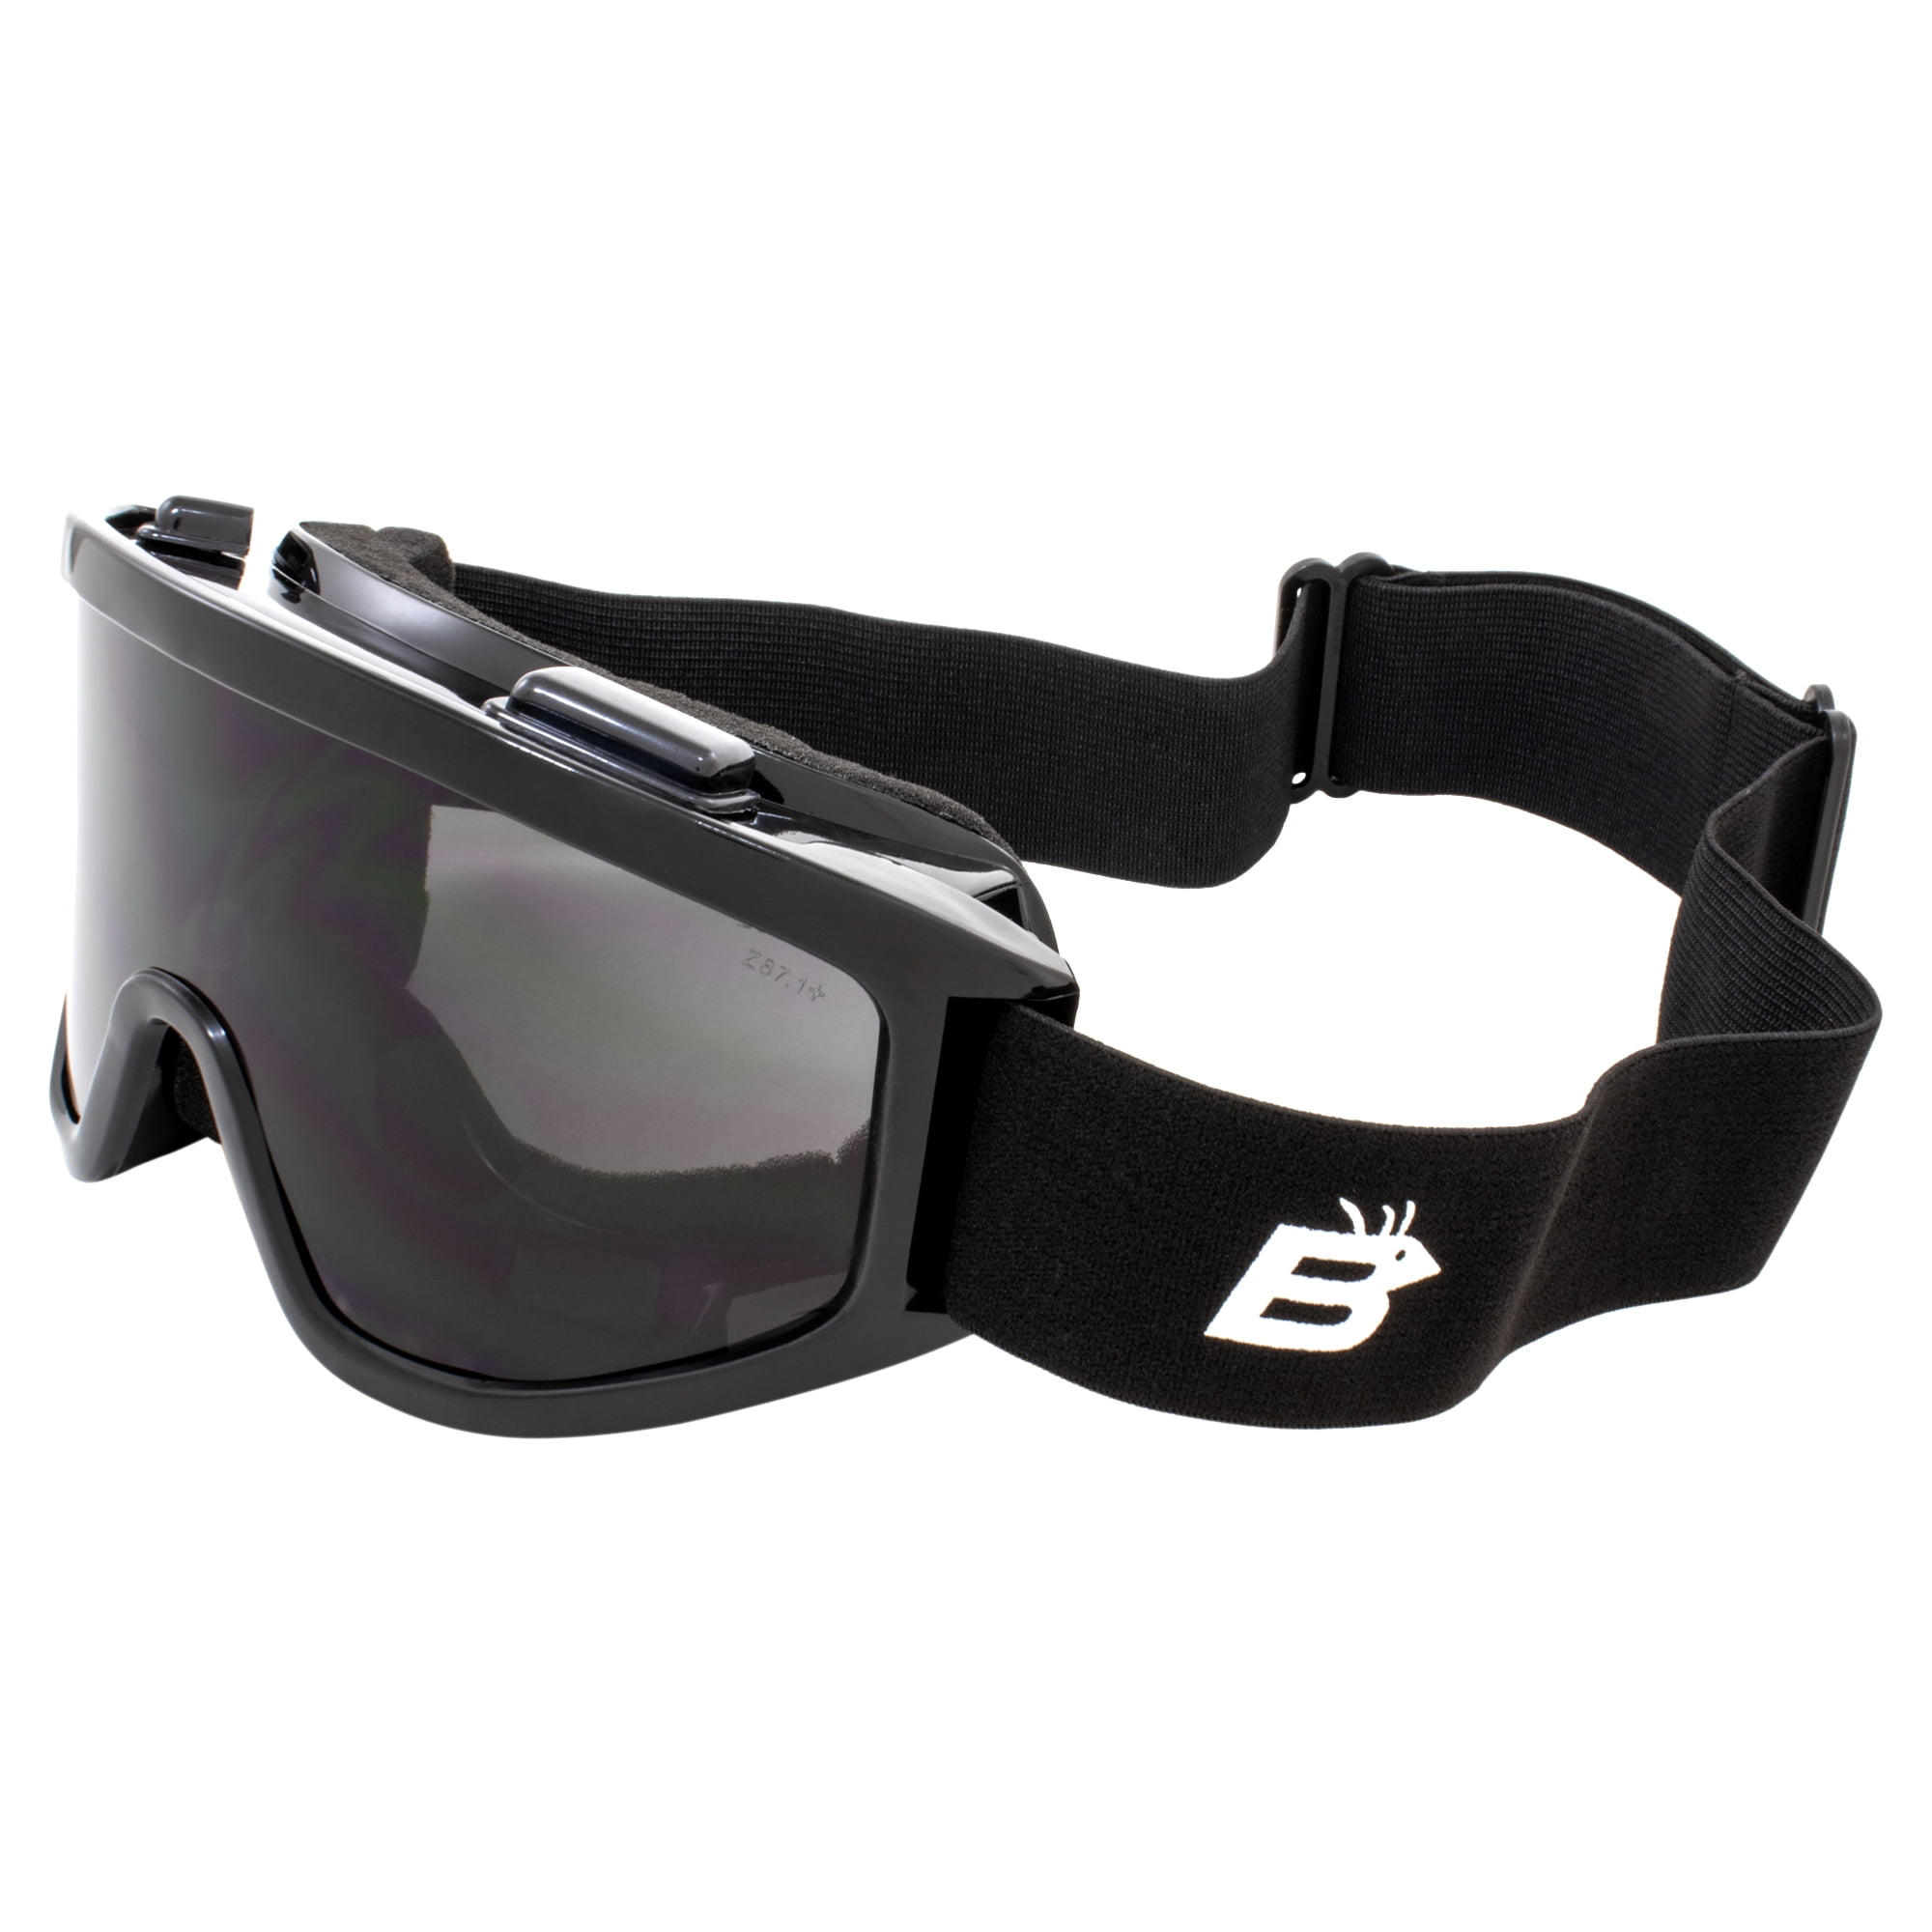 LIFTSAFETY EBD10KST Bold Safety Glasses Black/Smoke 